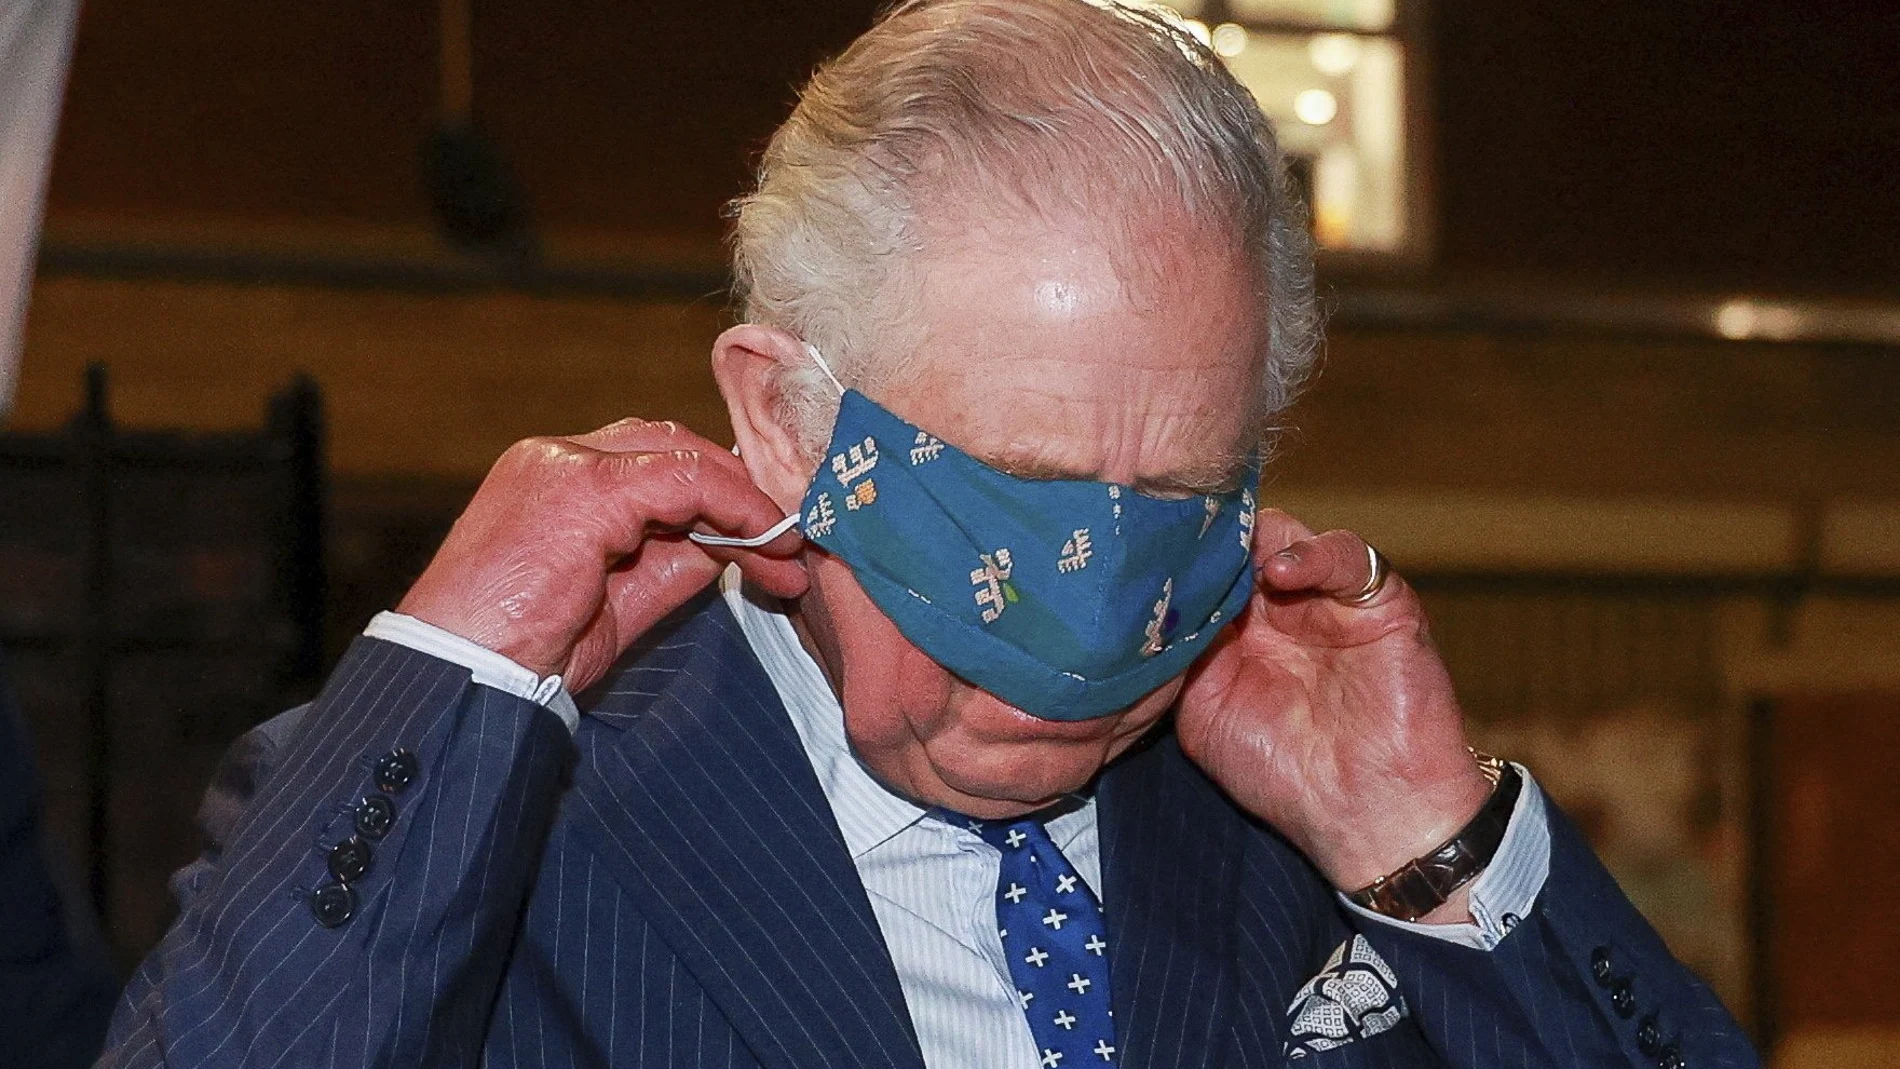 El príncipe Carlos ajustándose con notables dificultades su mascarilla durante un acto público en Londres